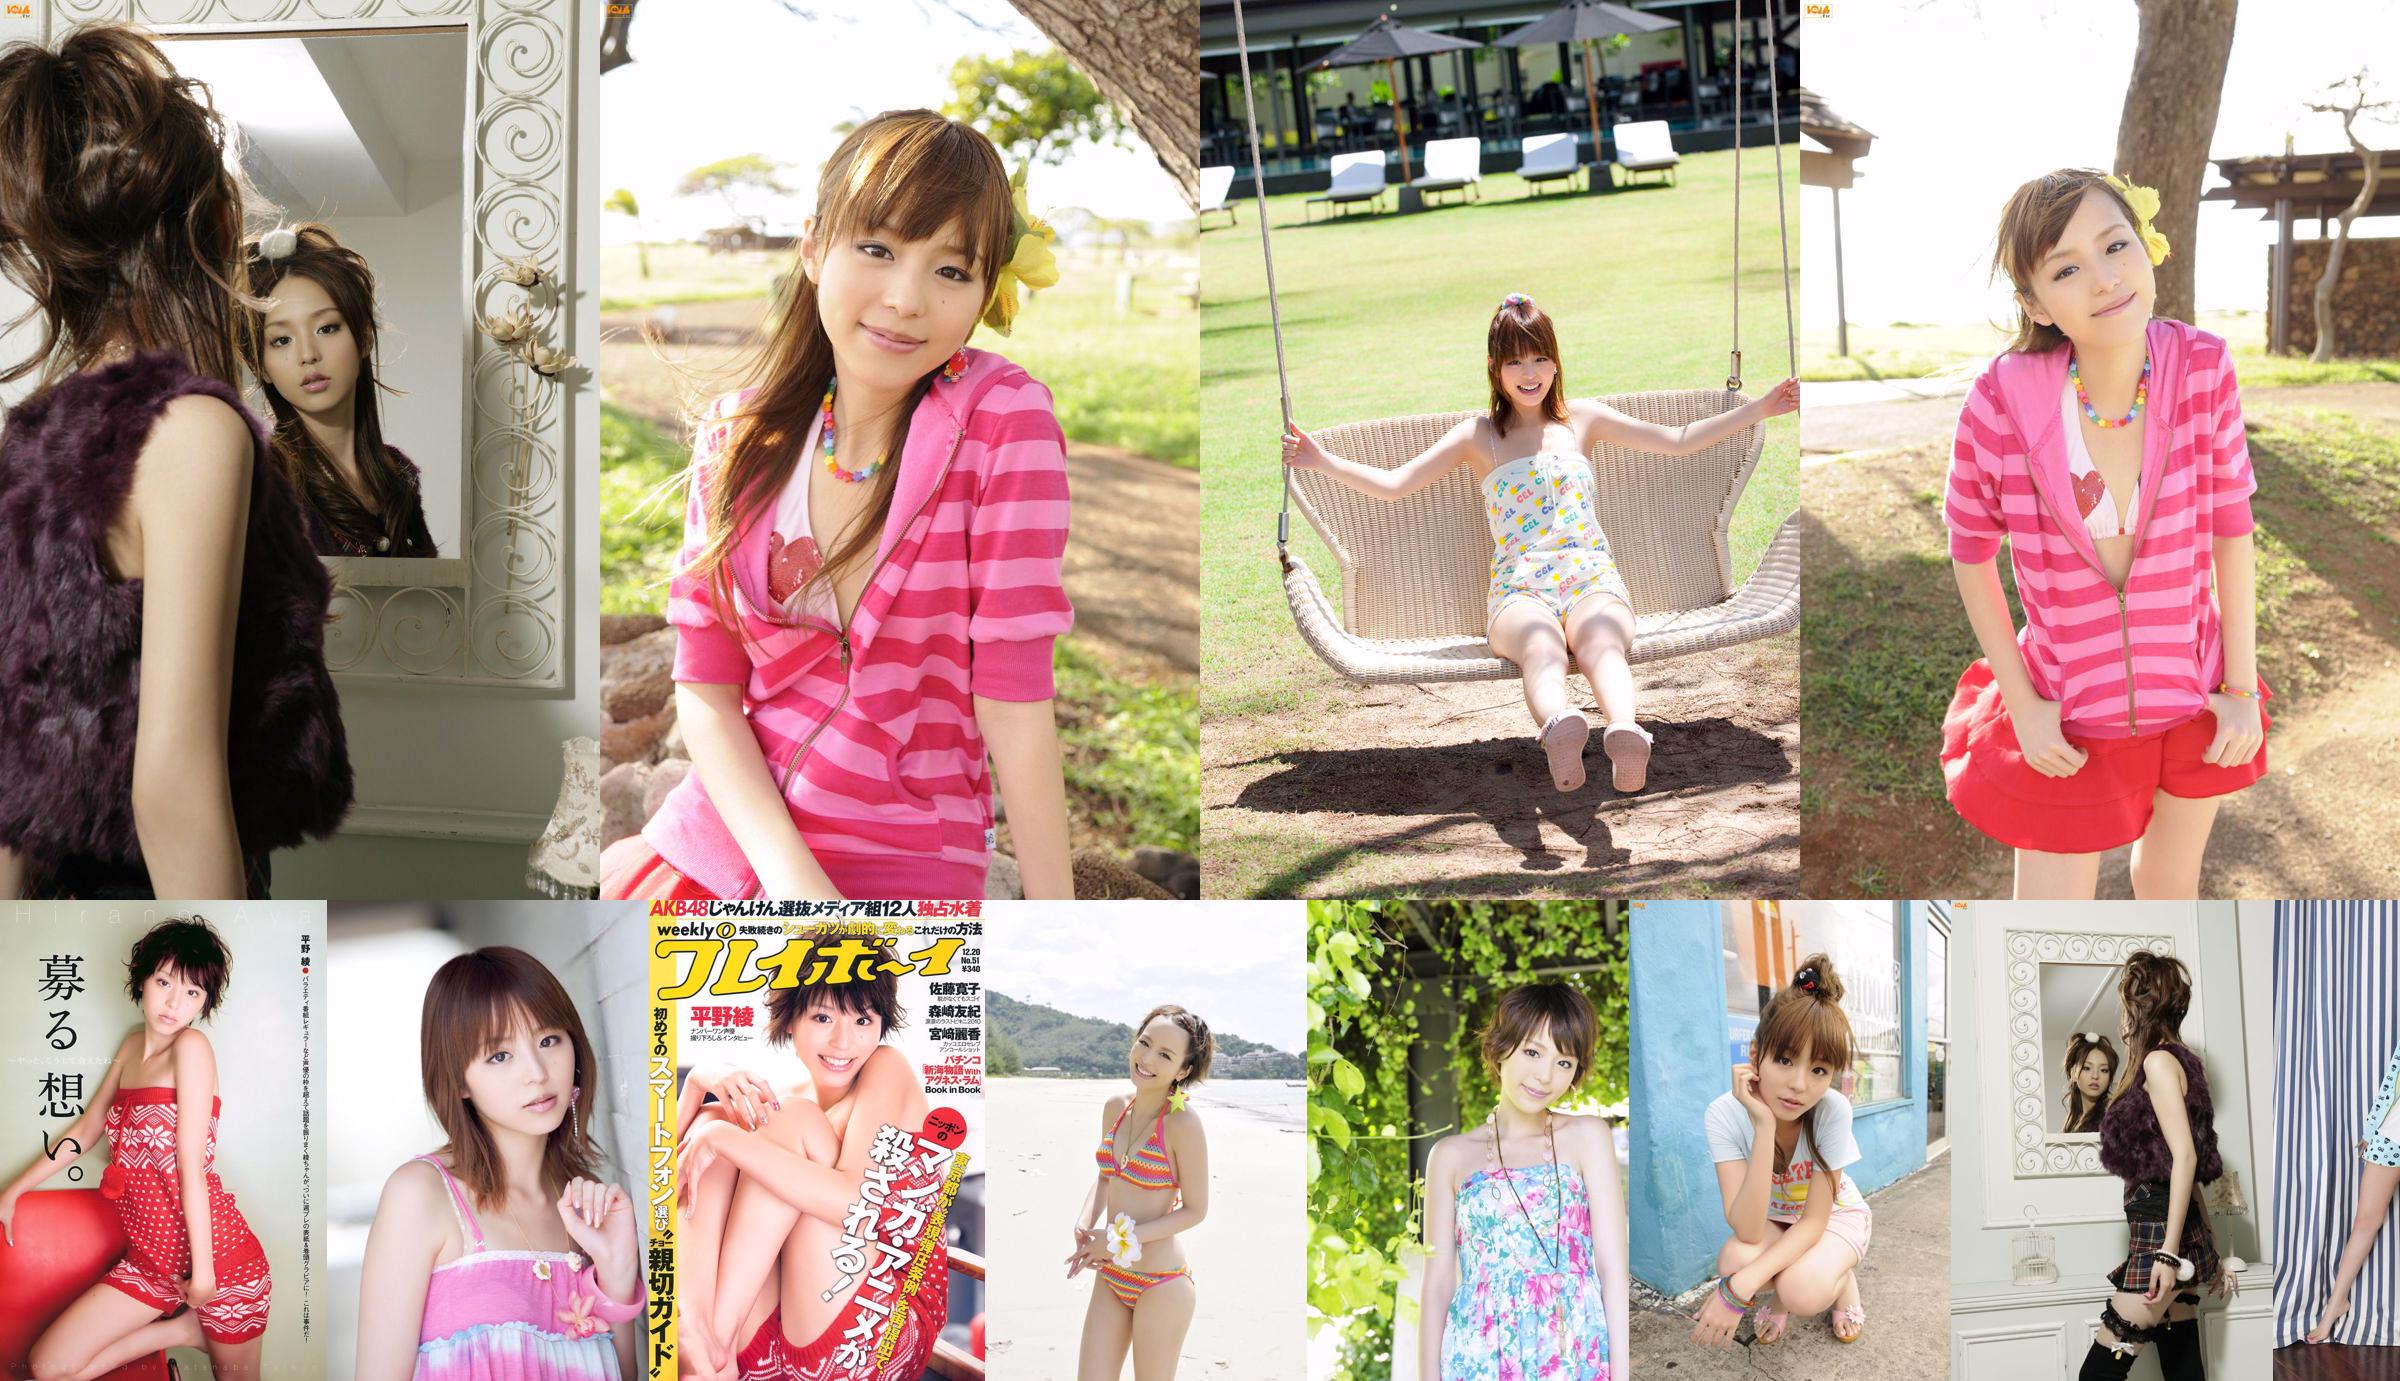 히라노 아야 AKB48 사토 히로코 니시다 마이 모리 사키 아그네스 럼 [주간 플레이 보이] 2010 No.51 Photo Magazine No.52a5a8 페이지 5